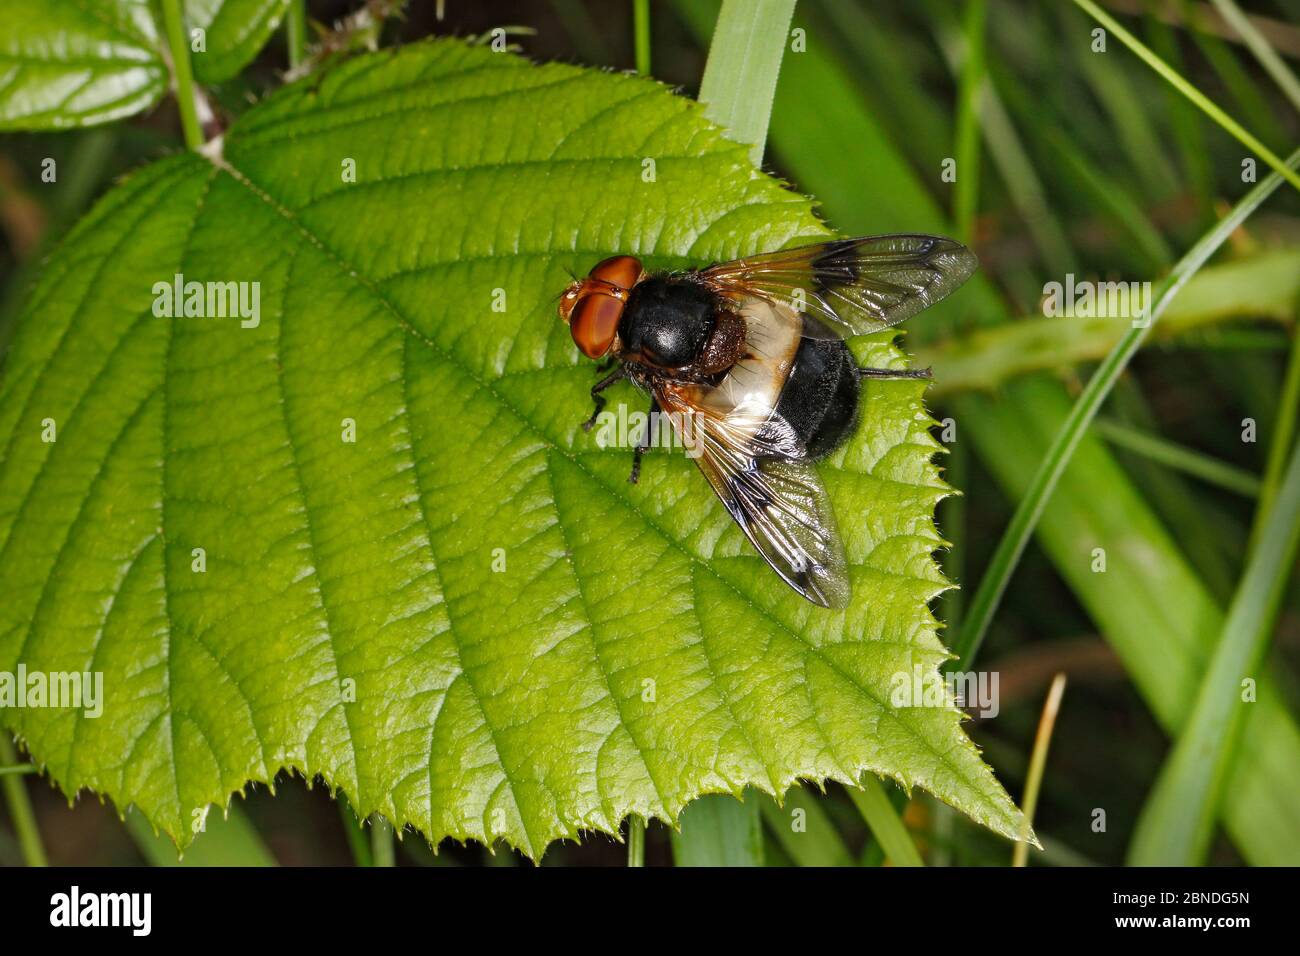 Gran mosca de la hoja (Volucella pellucens) descansando en la hoja en el borde del bosque, Cheshire, Inglaterra, Reino Unido, julio. Foto de stock